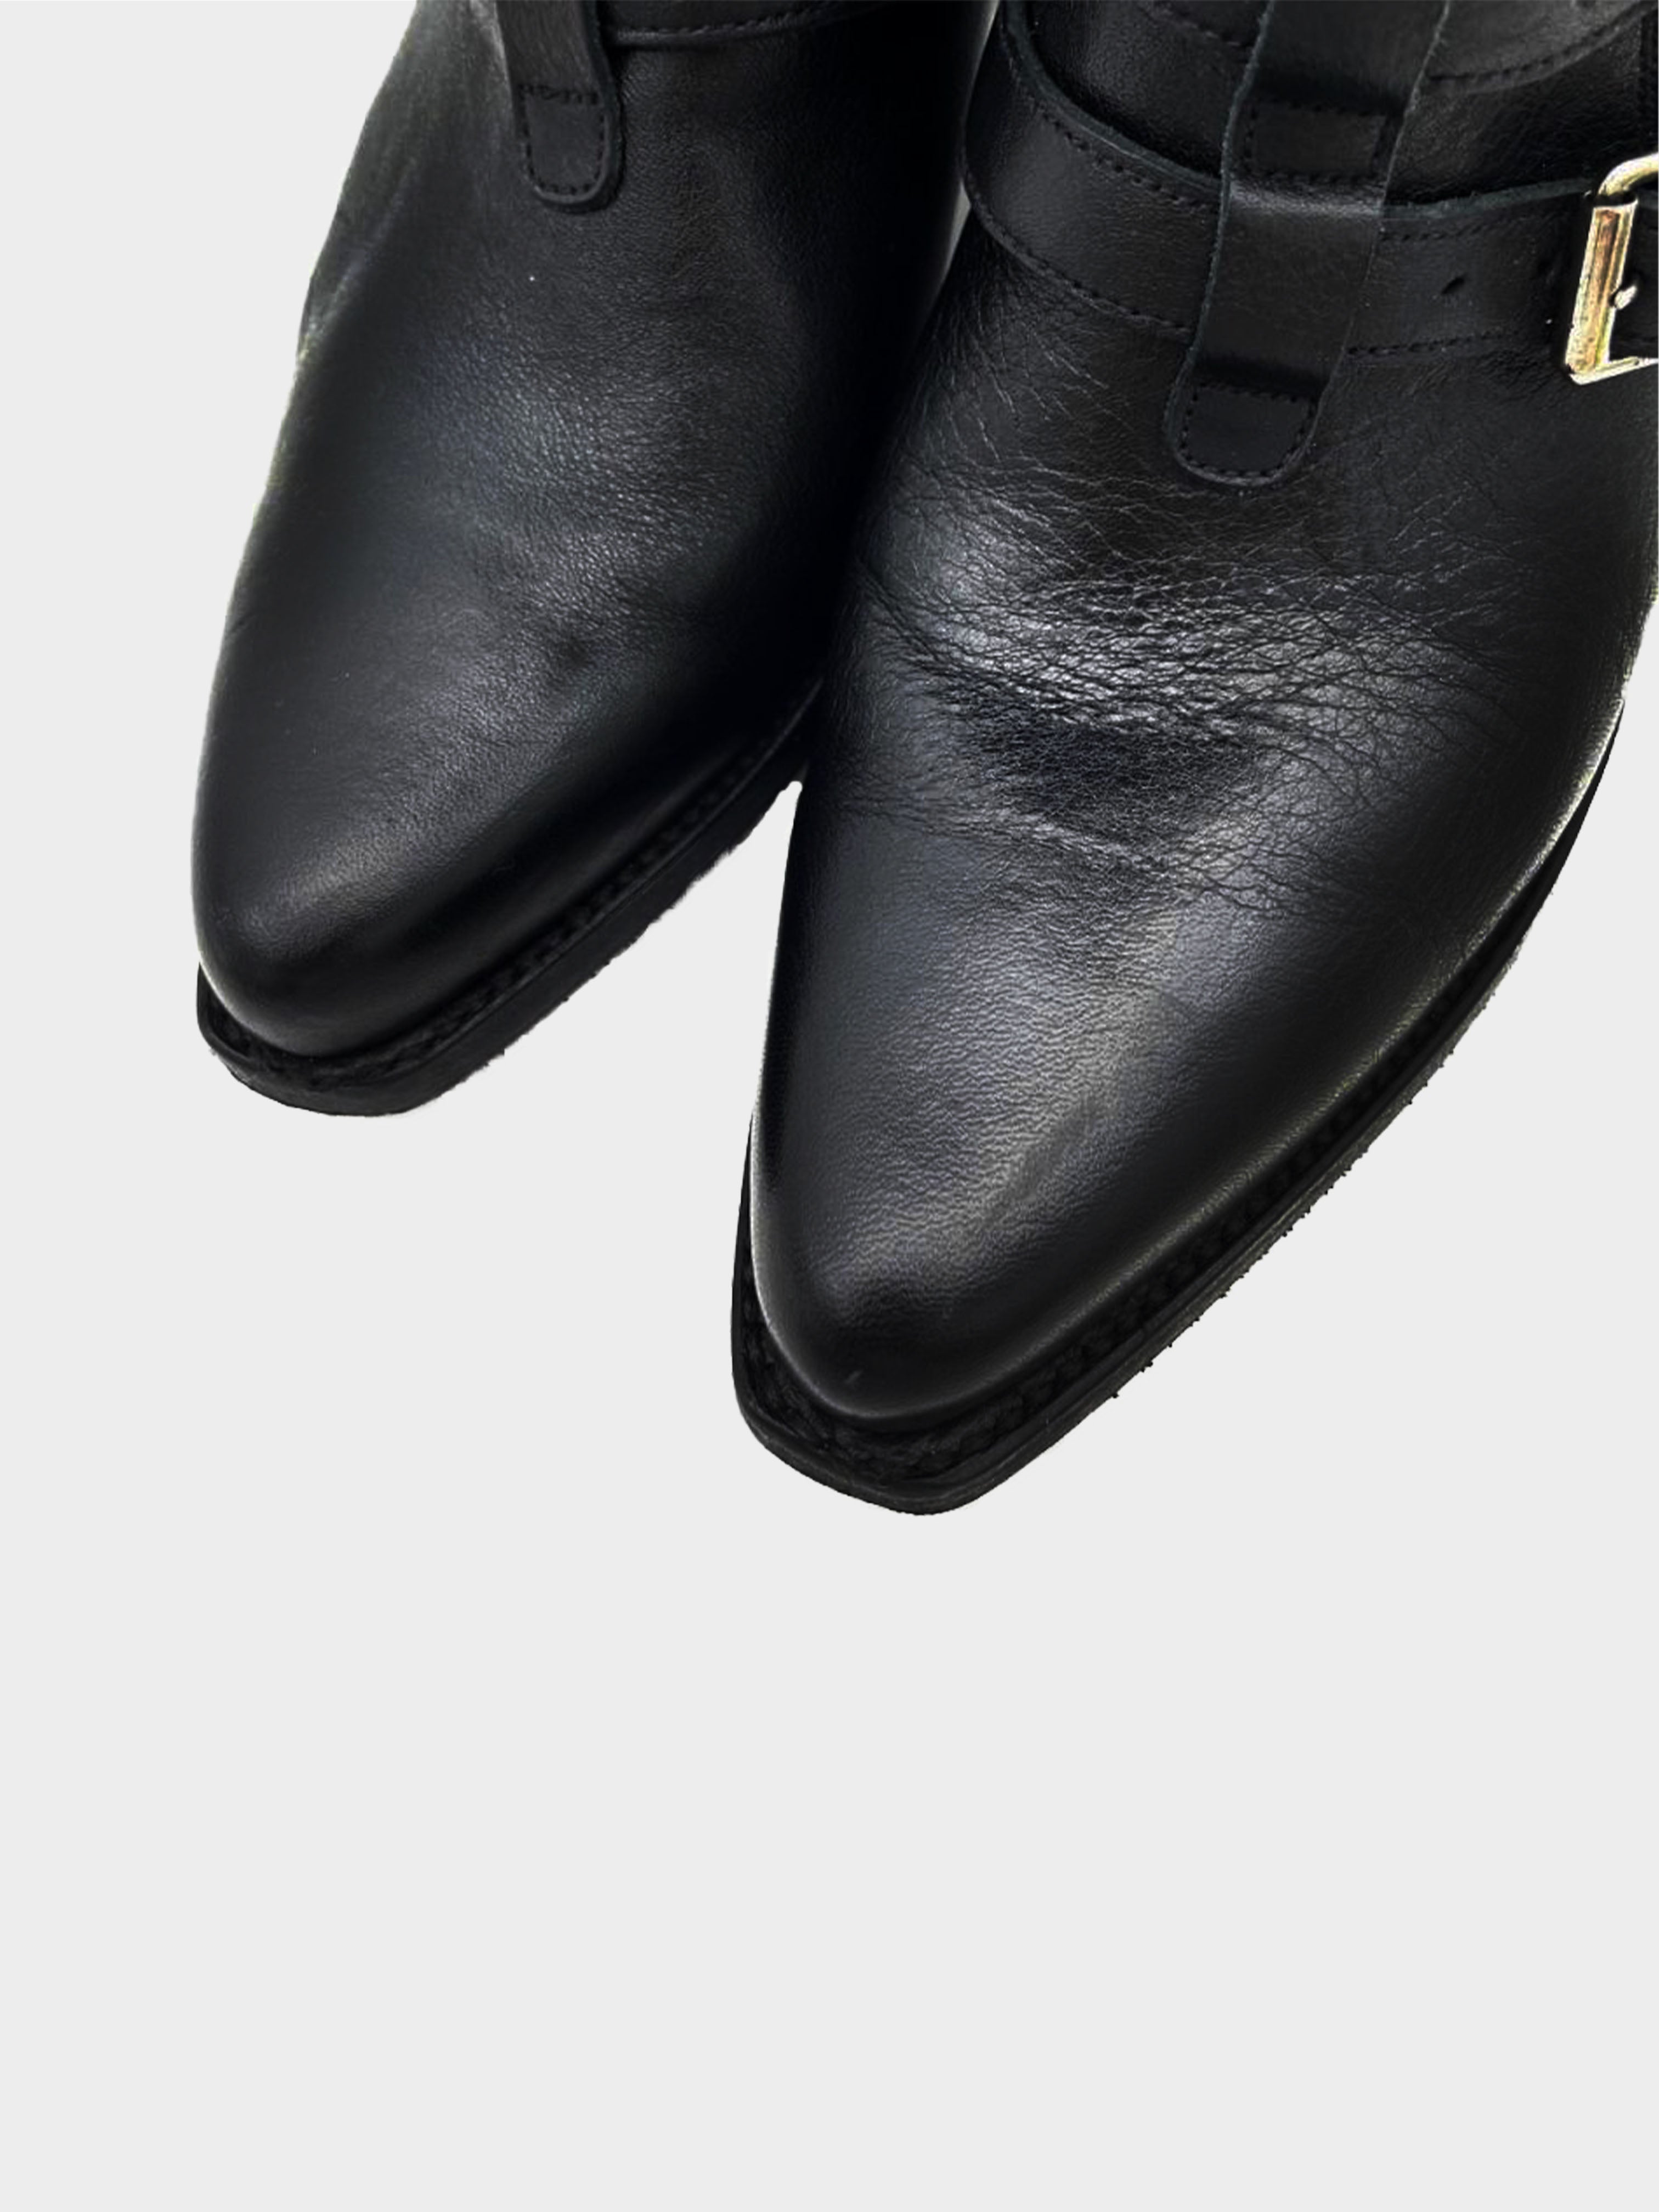 Celine SS 2019 Black Belted Ankle Boots